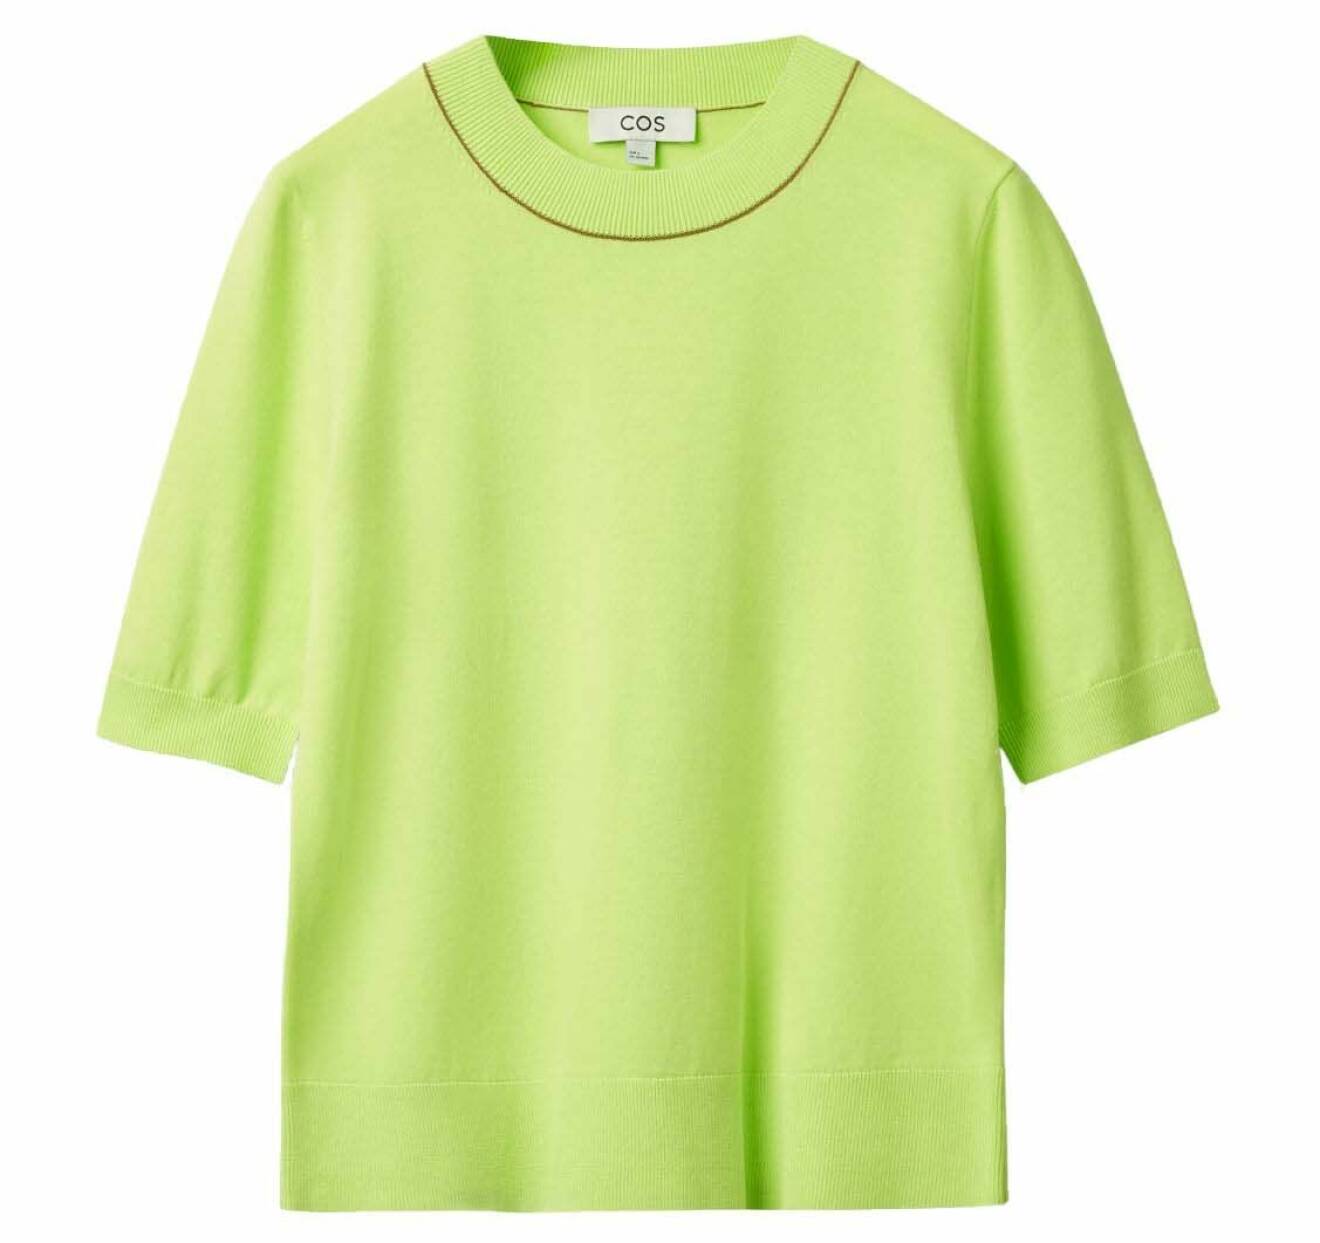 Limegrön tshirt från cos